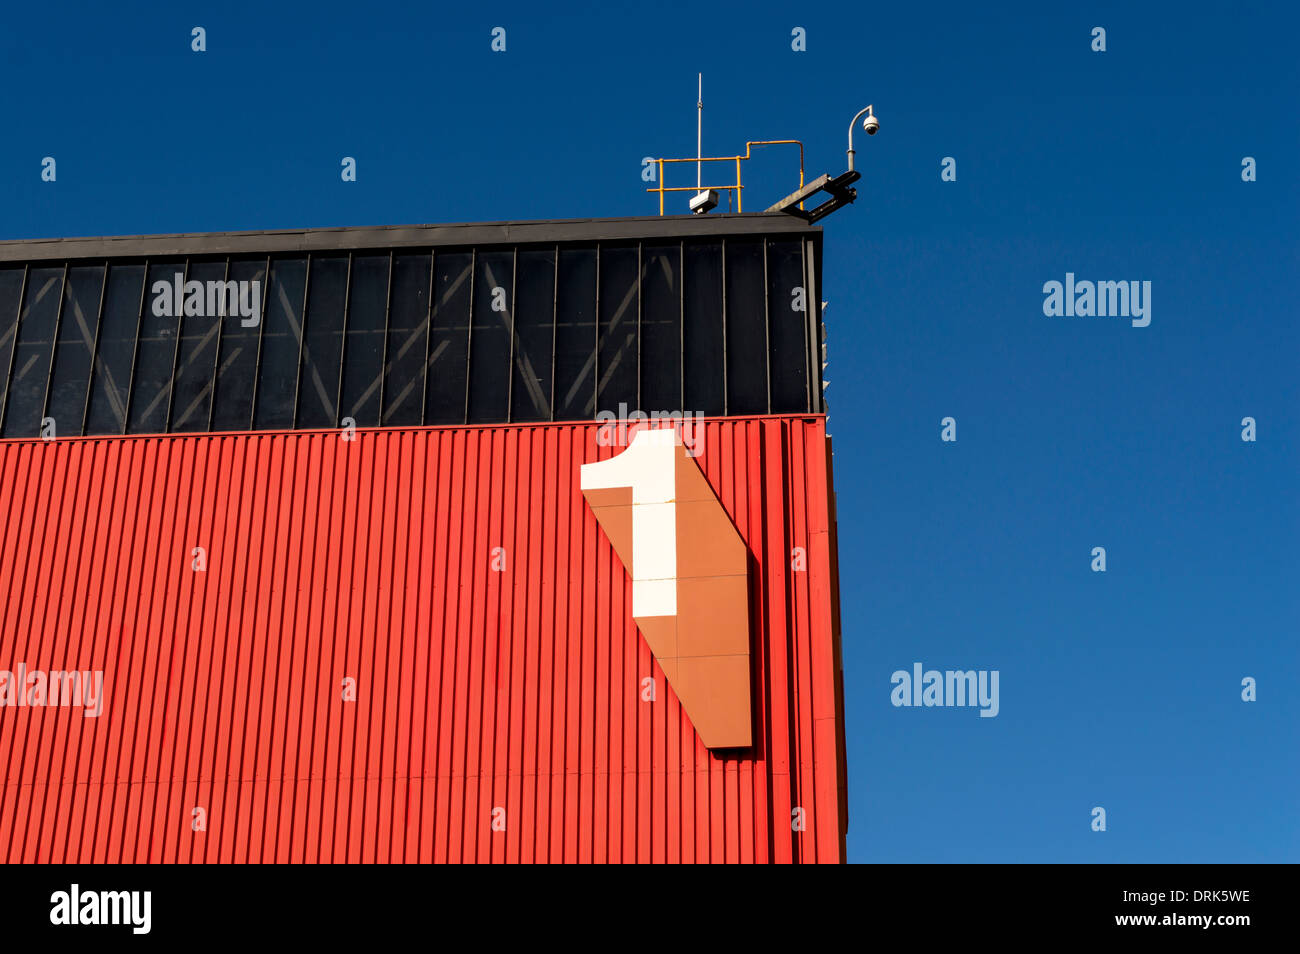 Grand chiffre numéro 1 sur le côté du bâtiment industriel en métal rouge et noir au NEC, Birmingham. ROYAUME-UNI Banque D'Images